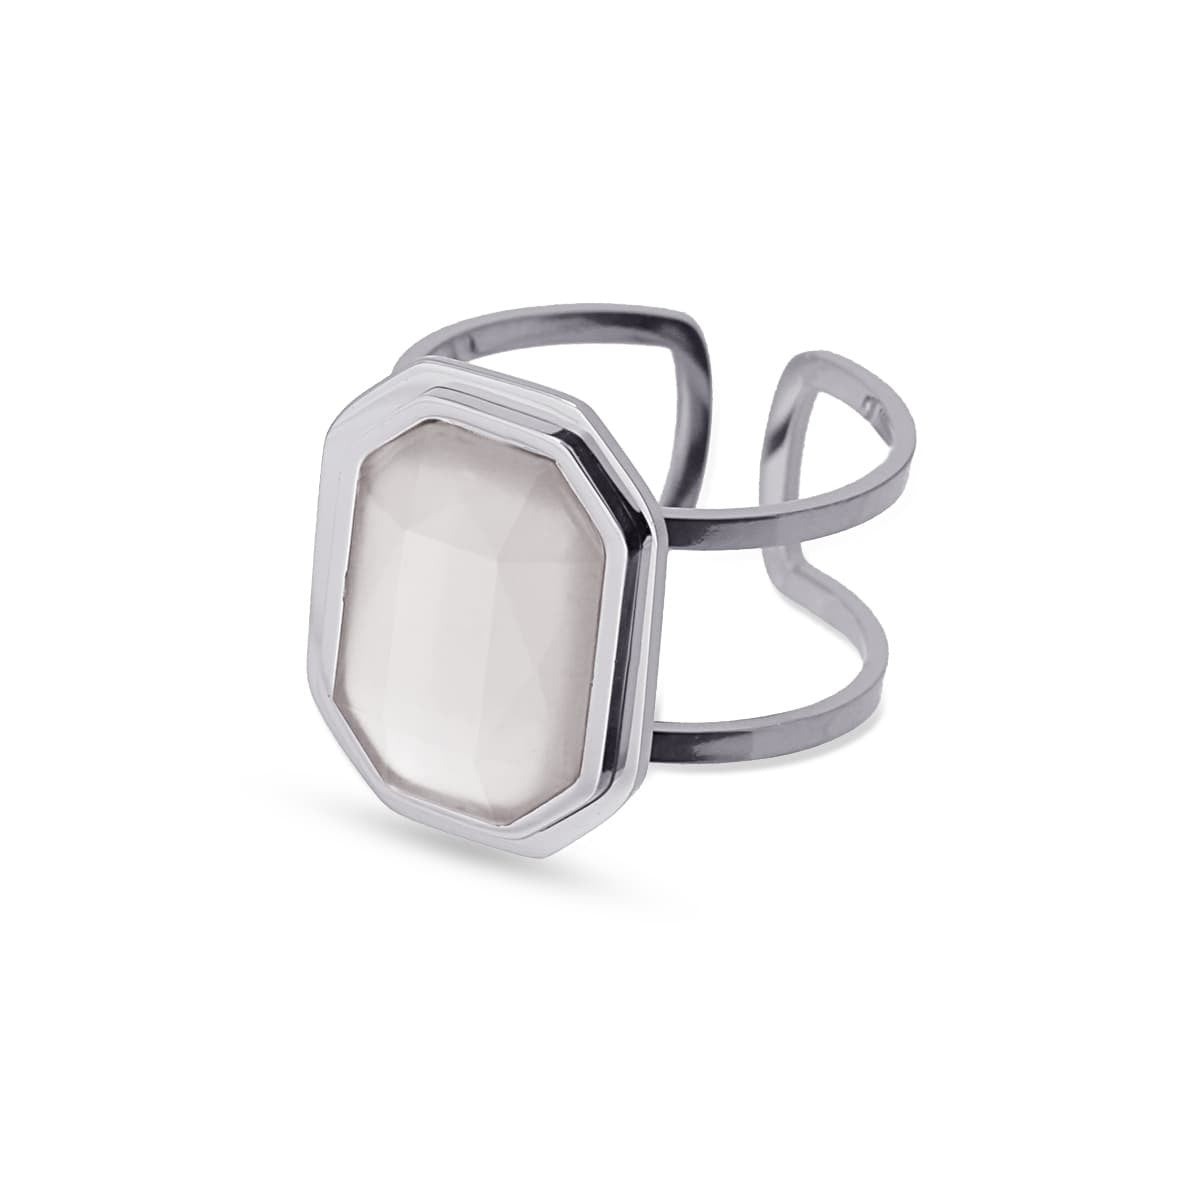 Maxi anillo  cadena eslabones acero quirúrgico plástico reciclado piedra coloreada gris